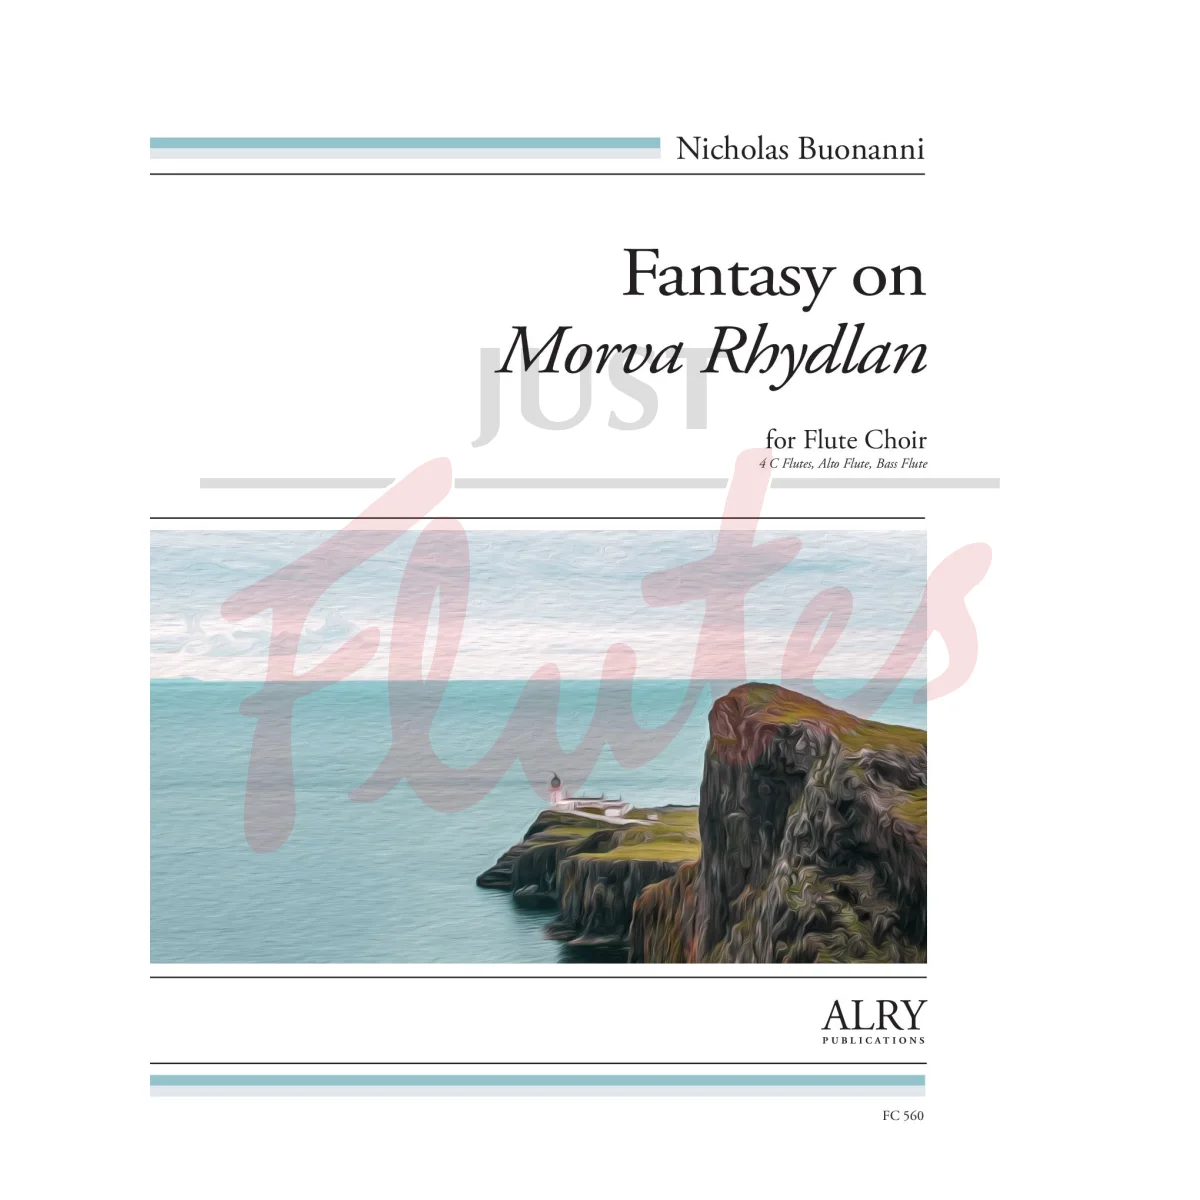 Fantasy on Morva Rhydlan for Flute Choir